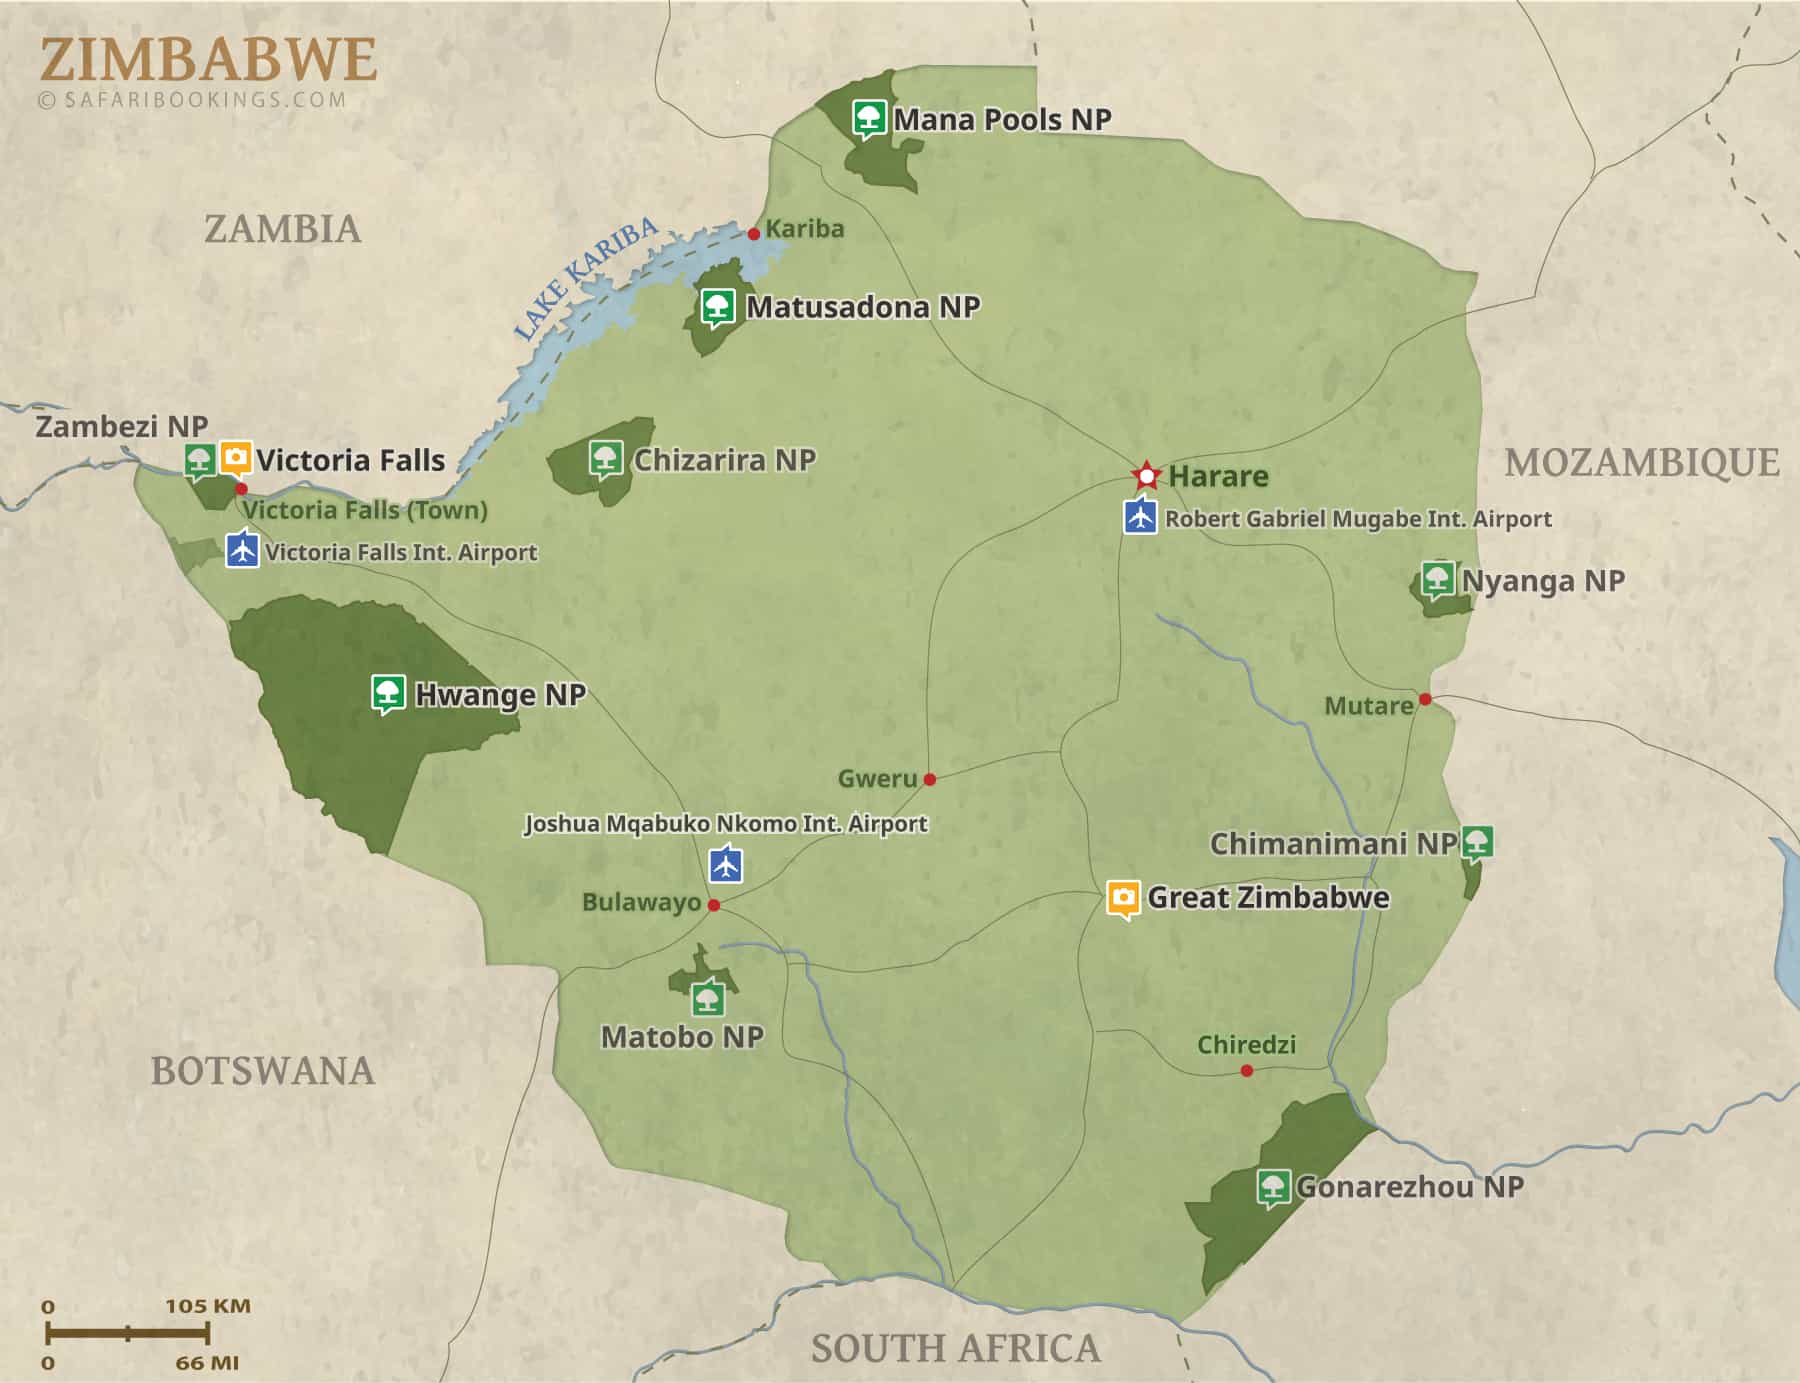 Detailed Map of Zimbabwe National Parks